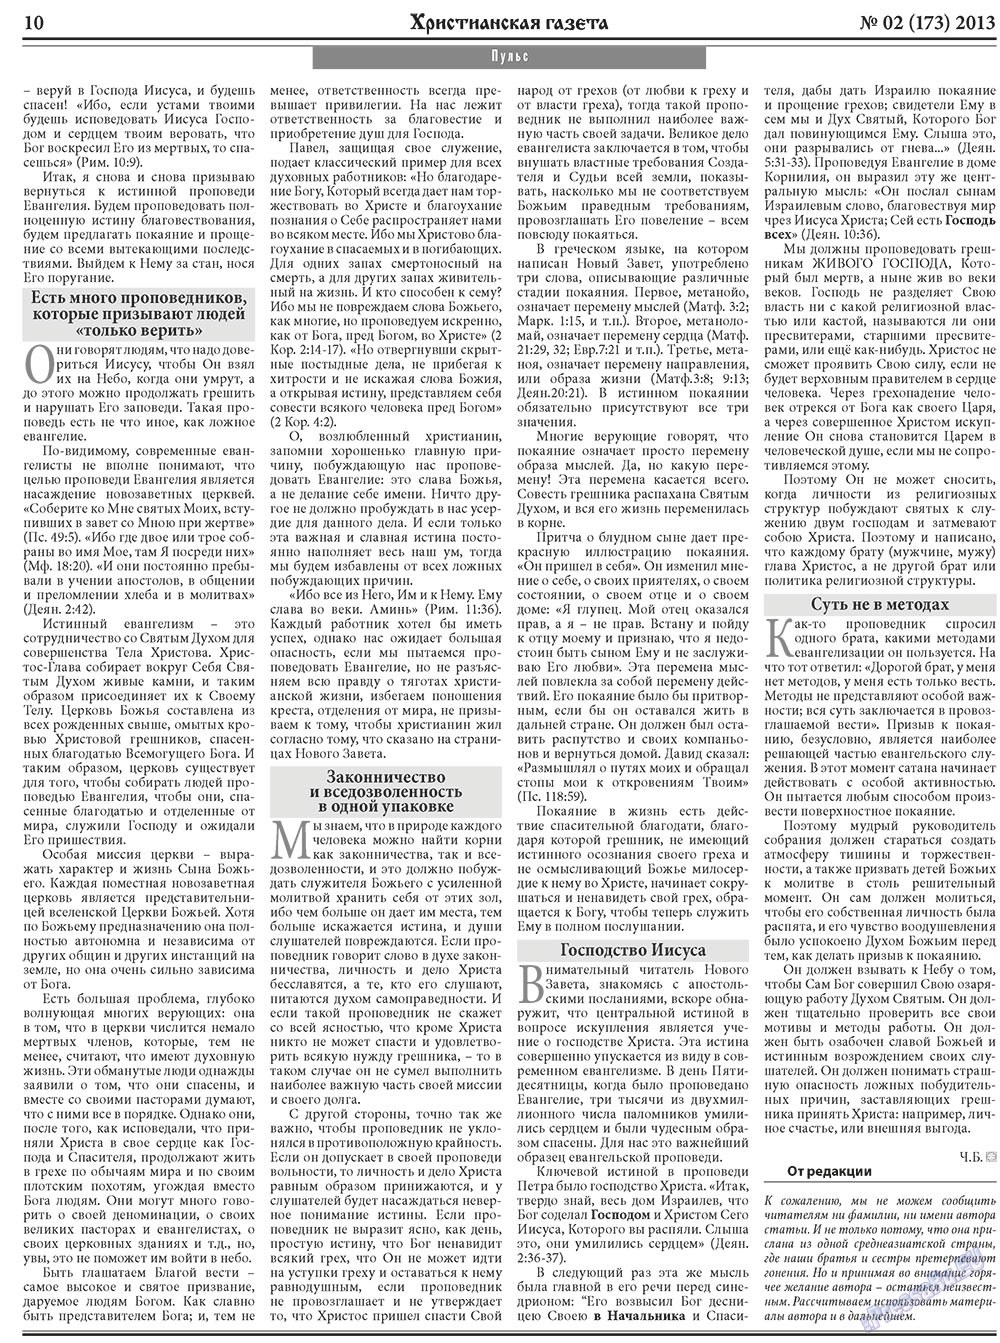 Христианская газета, газета. 2013 №2 стр.10